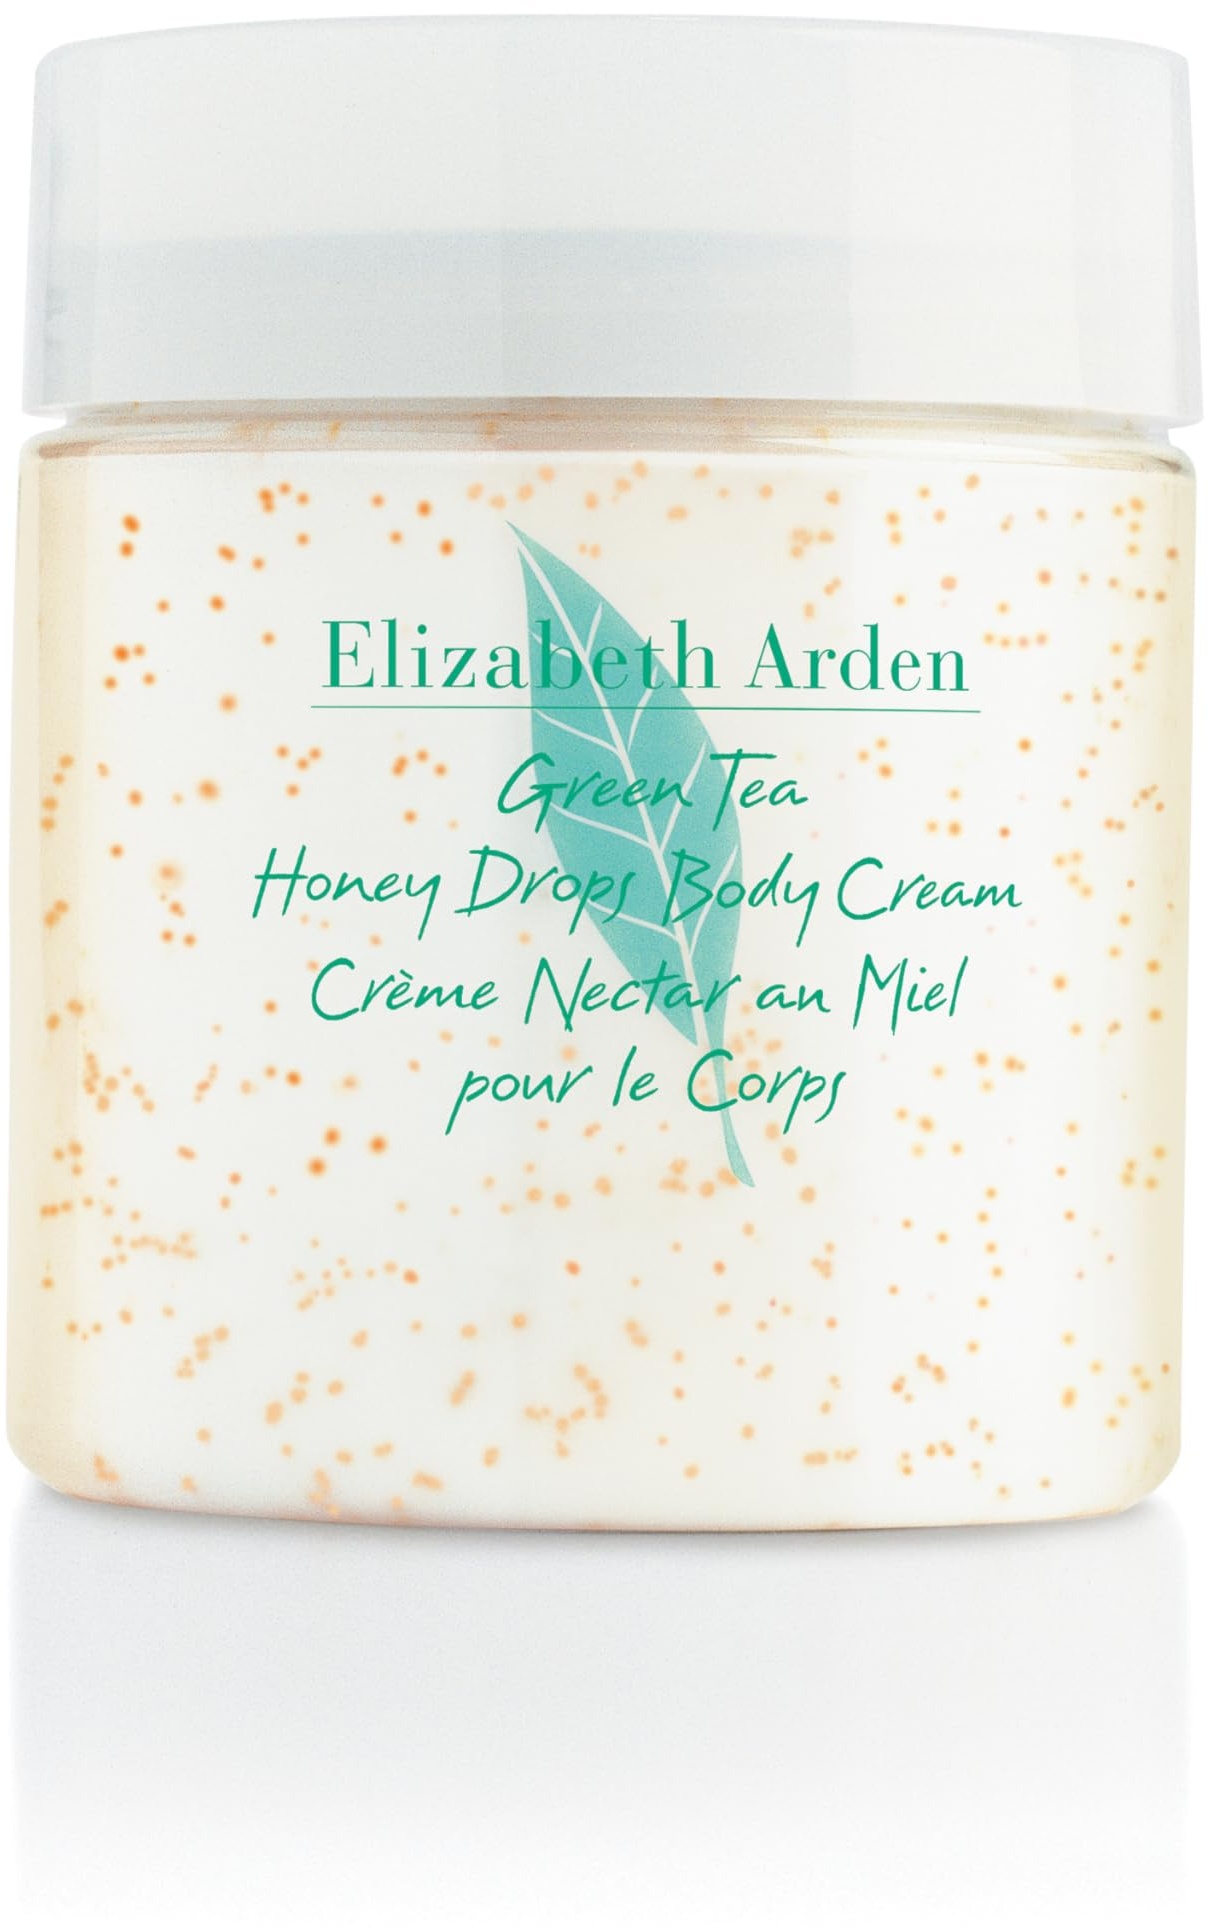 Elizabeth Arden Green Tea - Honey Drops Body Cream, 250 ml, Bodylotion mit Tee-Extrakt, Honig & Shea Butter, beruhigt und pflegt trockene Haut, luxuriöse Körperpflege für Frauen